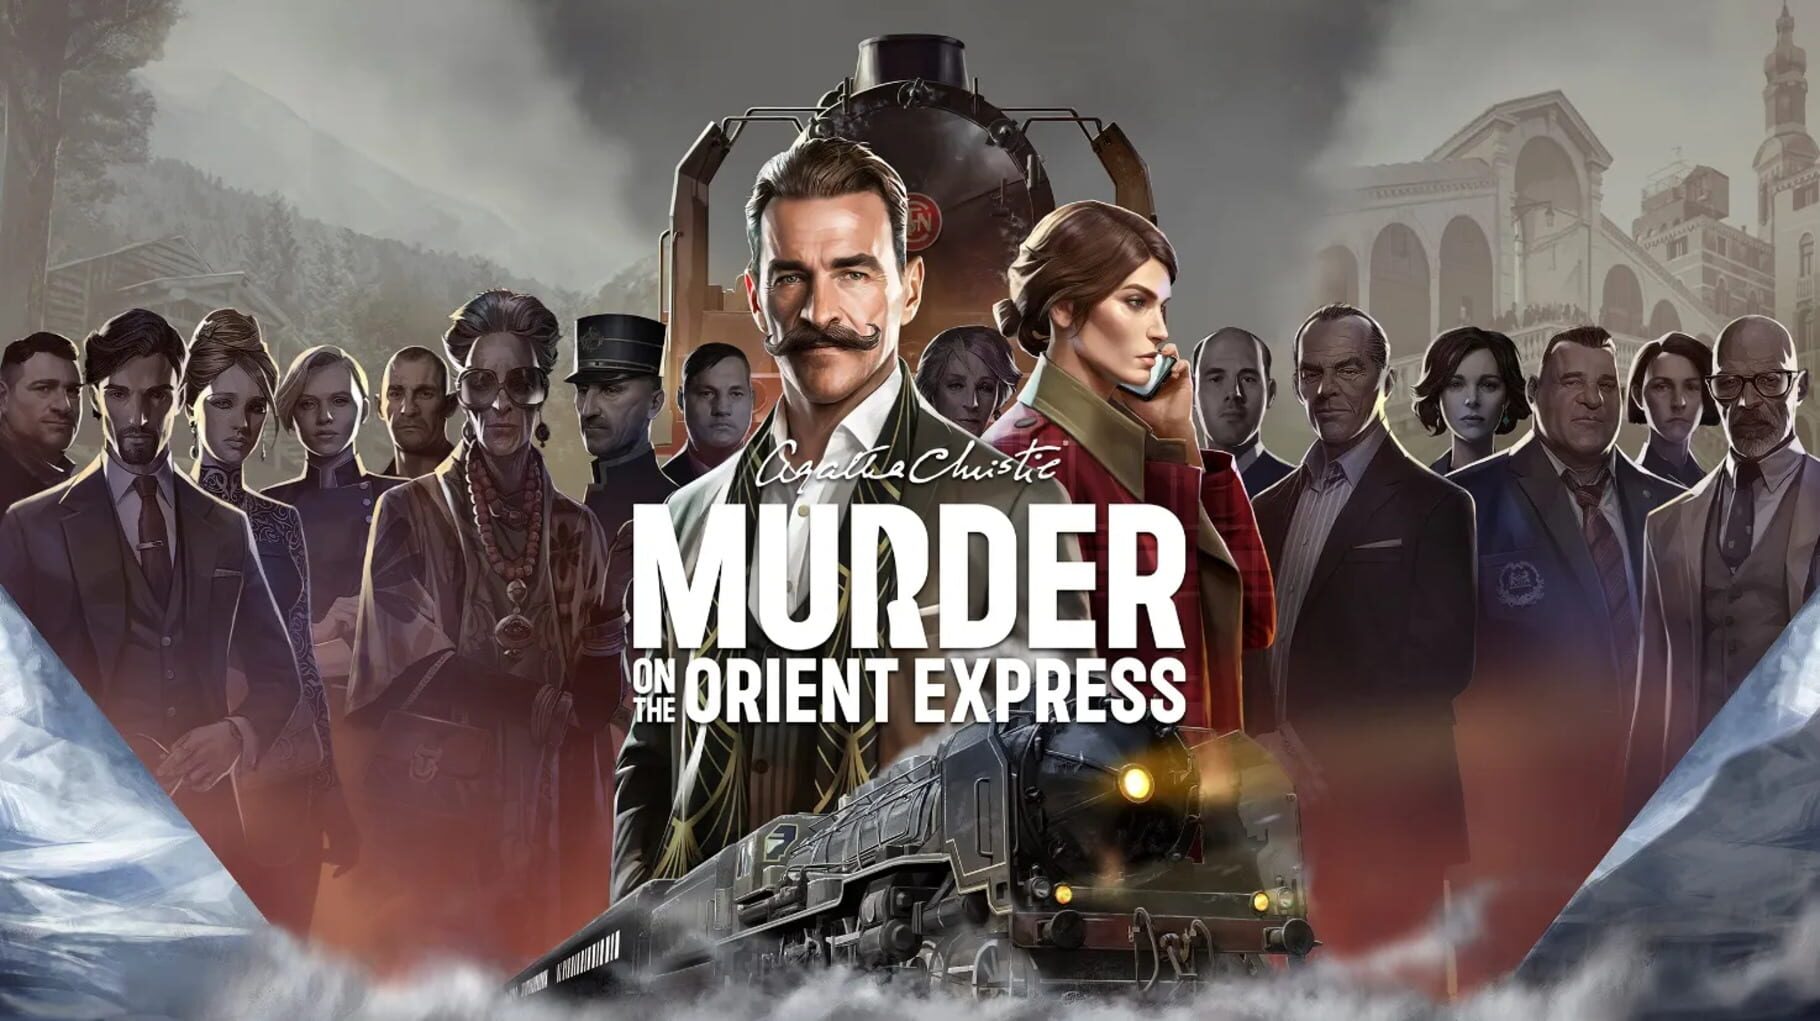 Agatha Christie: Murder on the Orient Express artwork